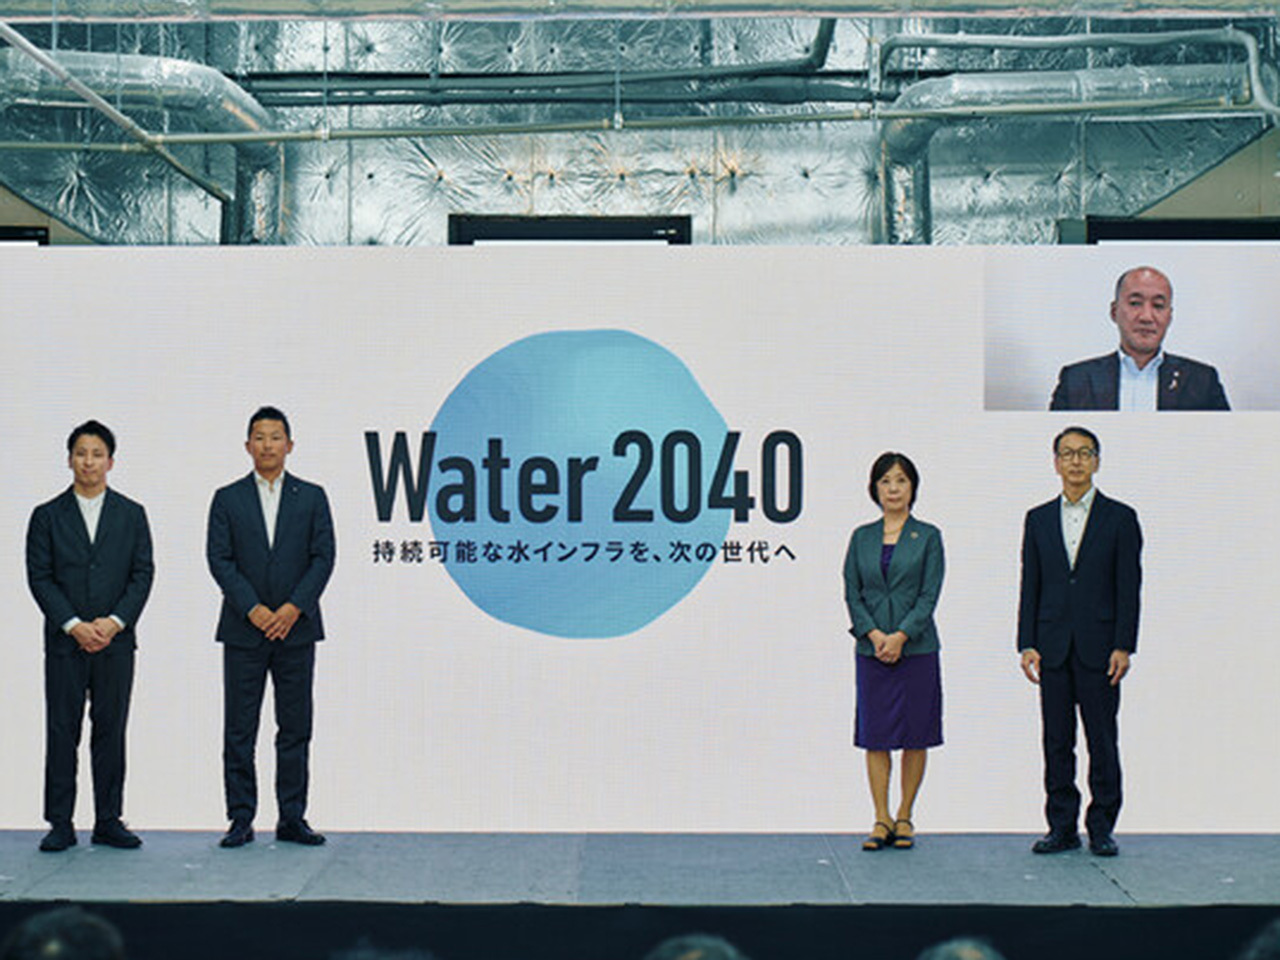 「Water 2040」プロジェクト